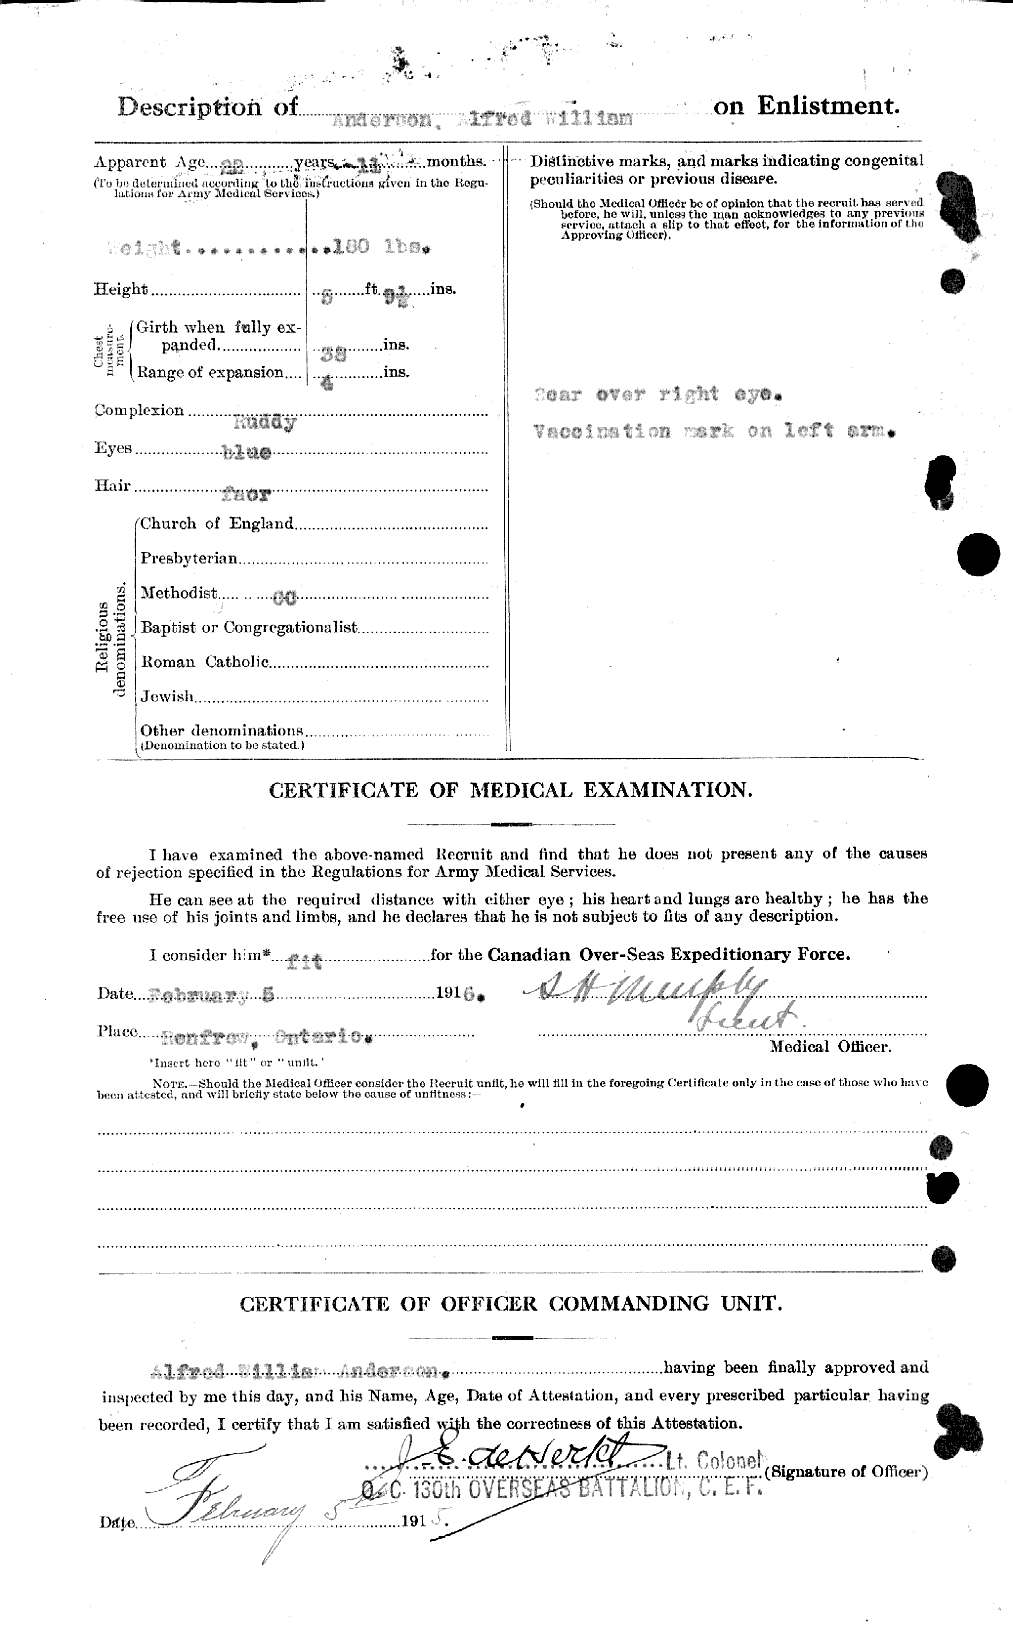 Dossiers du Personnel de la Première Guerre mondiale - CEC 051284b